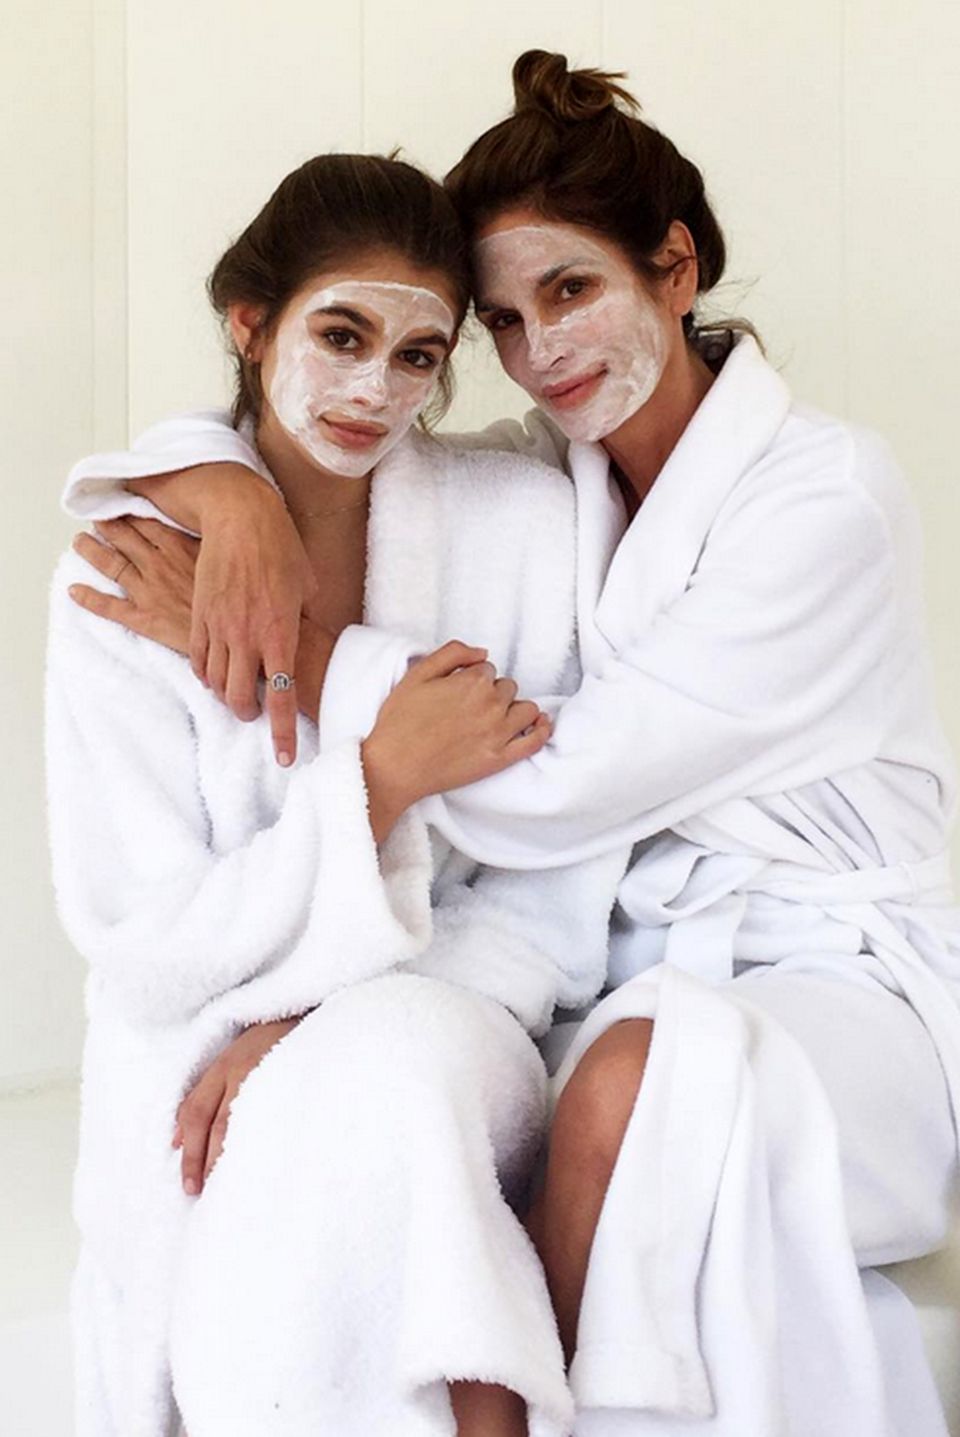 "Girls Day!" Cindy Crawford und ihre bezaubernde Tochter Kaia genießen einen gemeinsamen Beauty-Tag und sind mit Gesichtsmaske und weißen Bademänteln kaum noch auseinanderzuhalten.